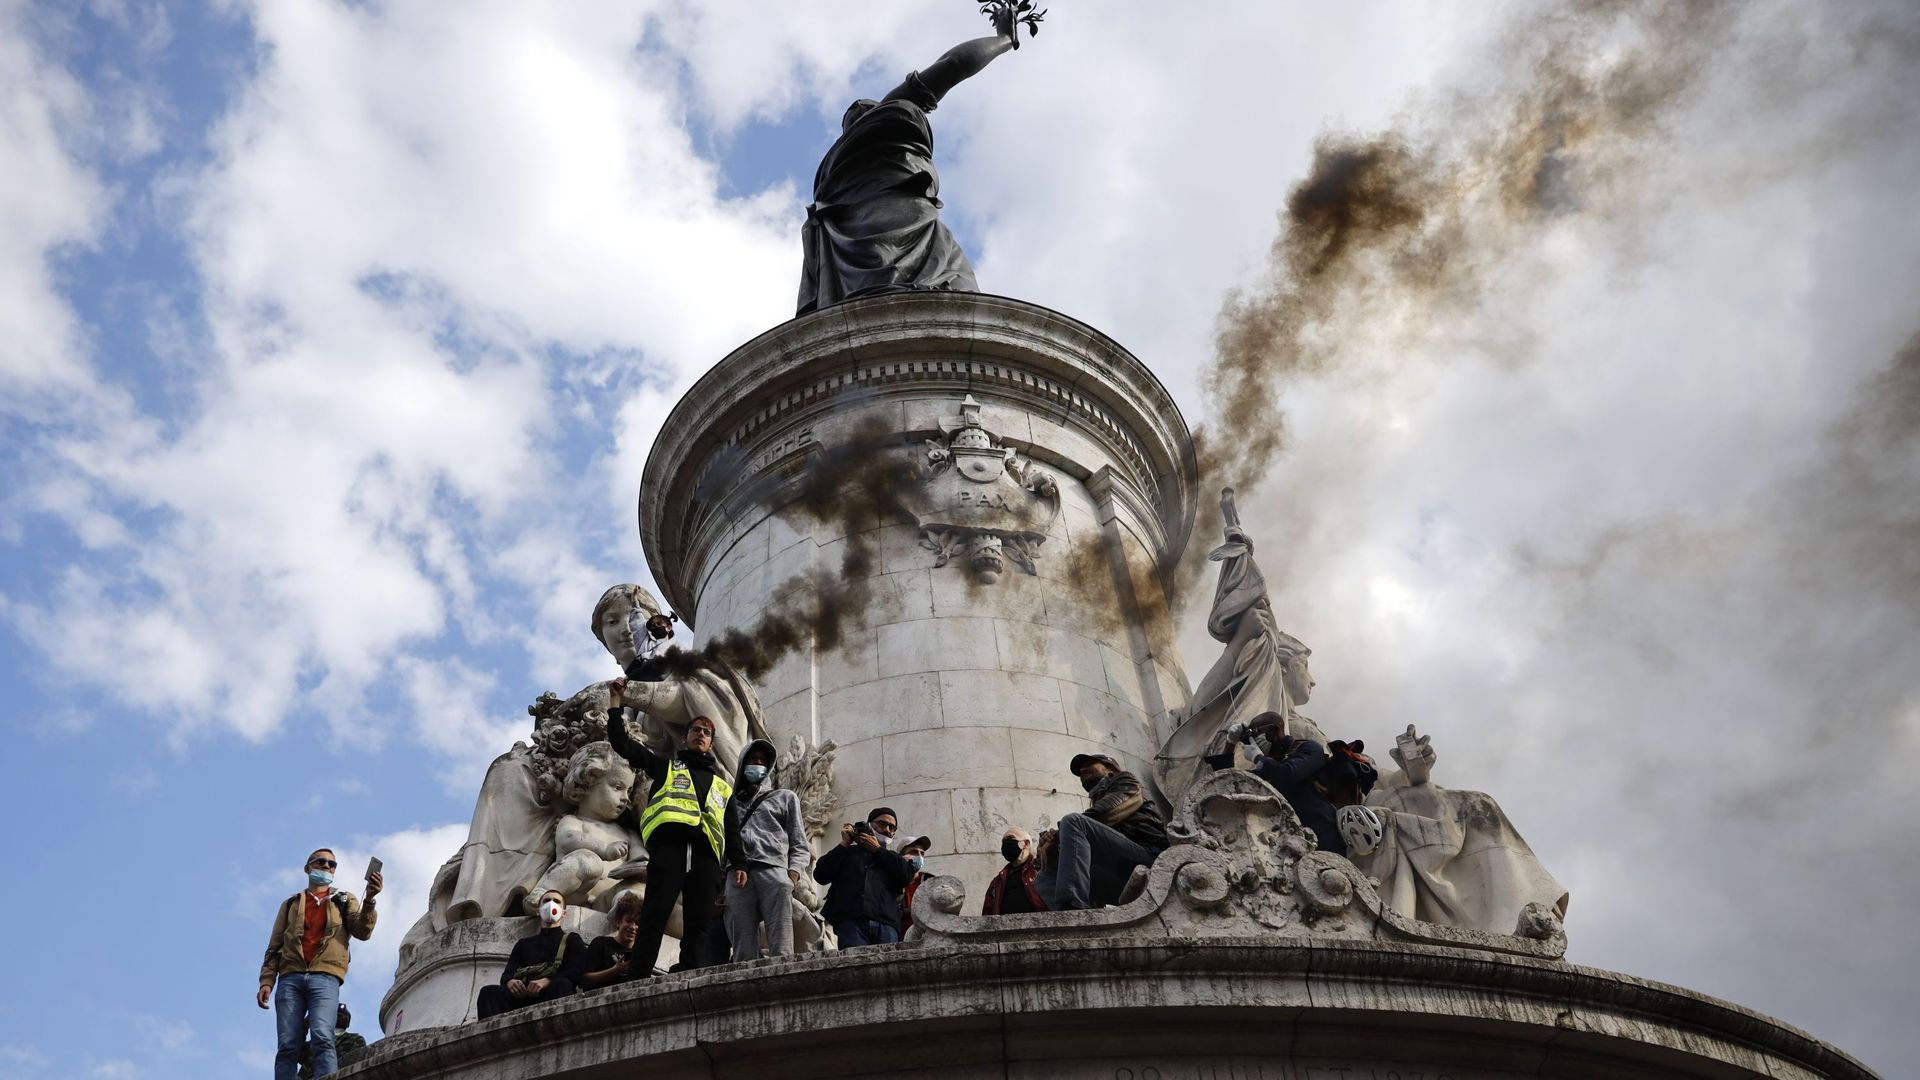 Archives : Des gens allument des fusées éclairantes alors qu'ils protestent sur la place de la République à Paris, le 9 juin 2020, lors d'une manifestation contre le racisme et la brutalité policière à la suite de la mort de George Floyd, un homme noir no